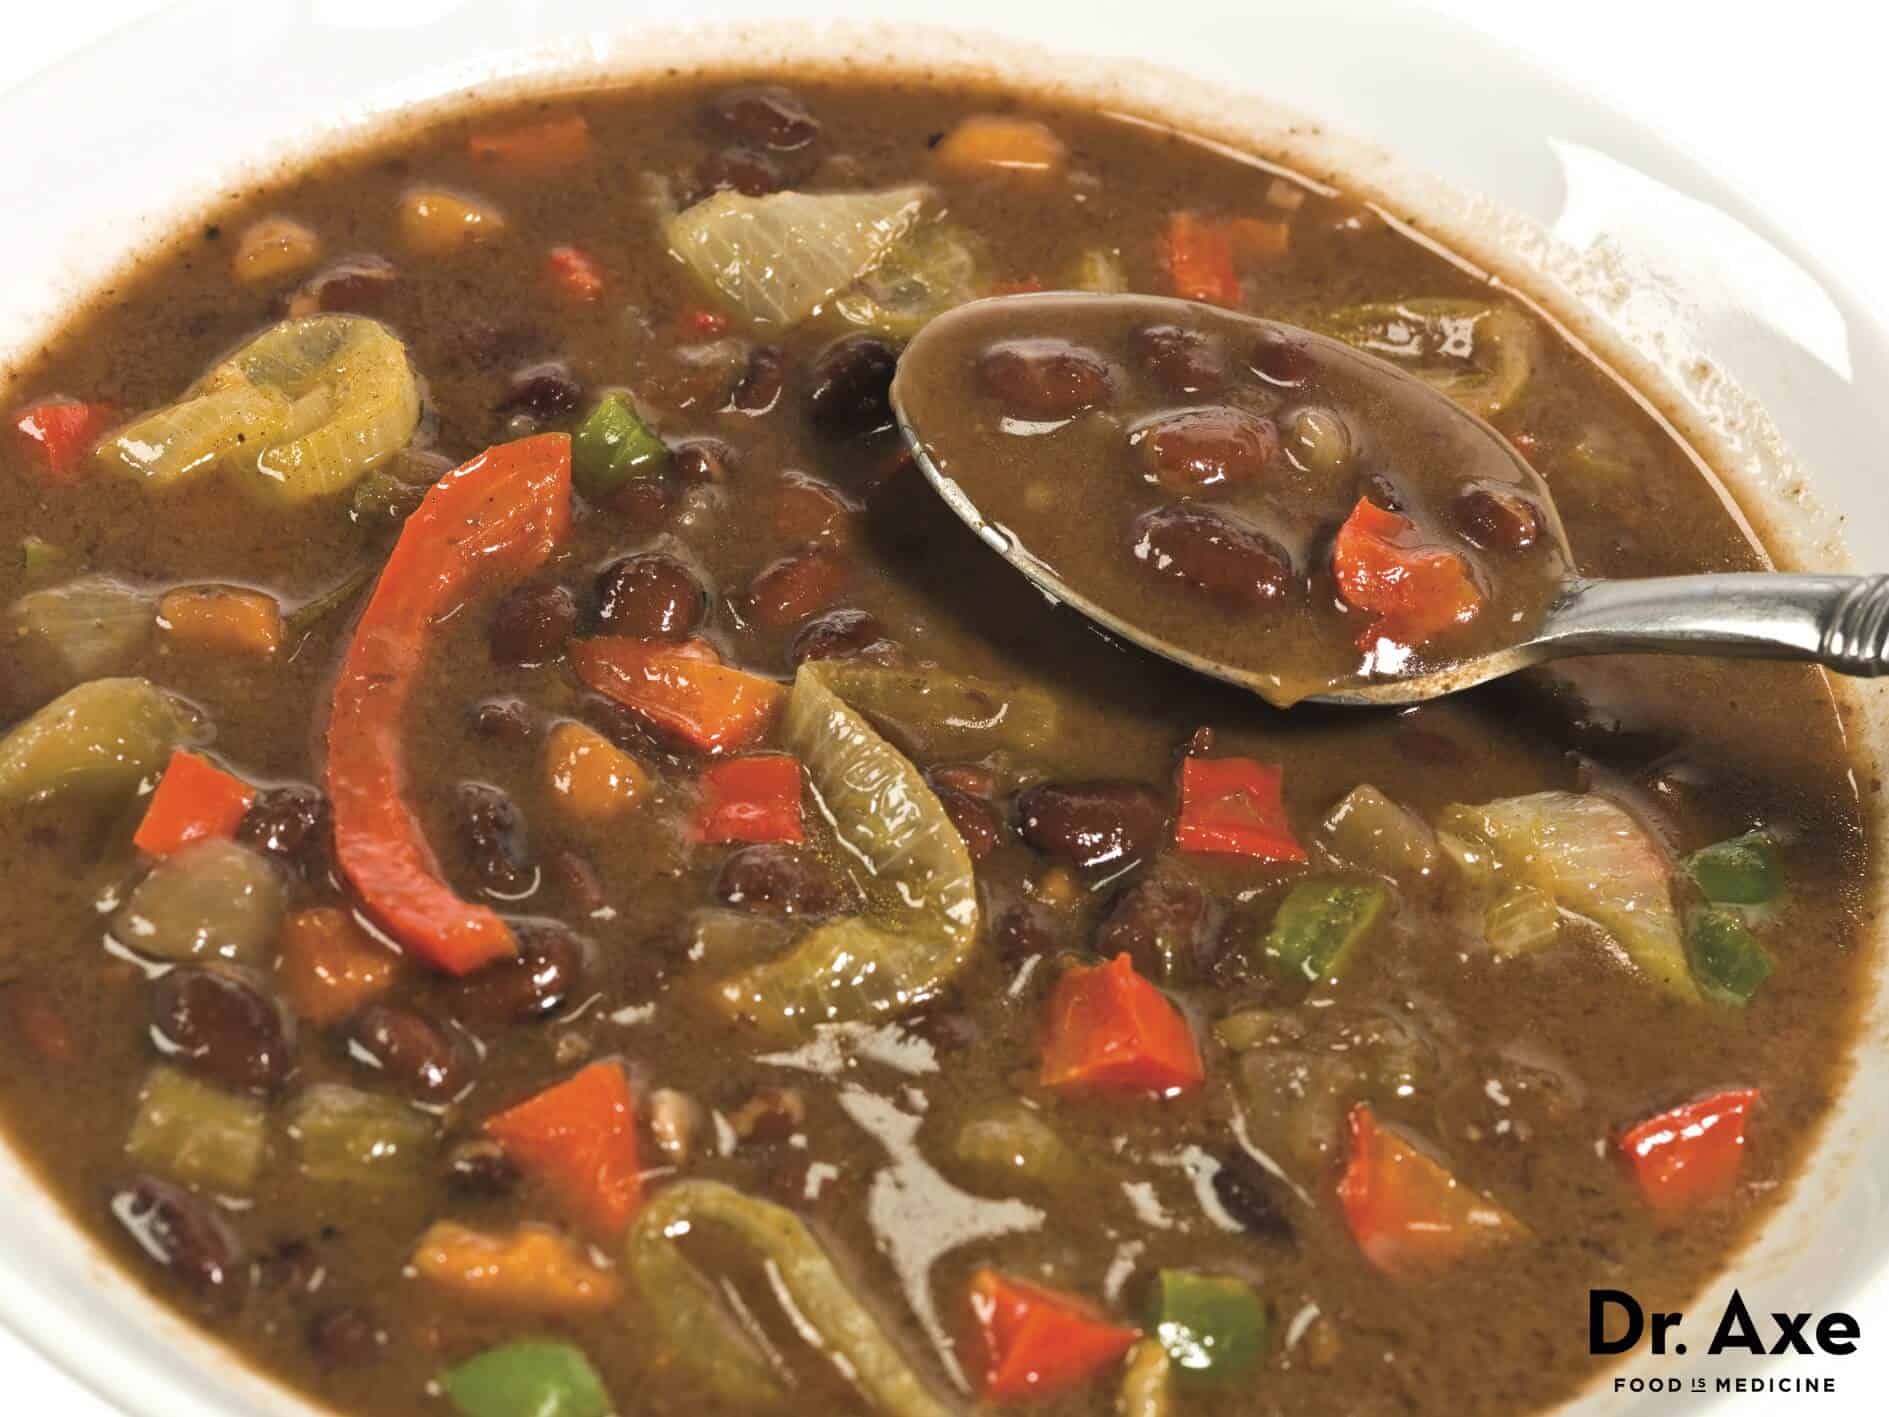 Black bean soup recipe - Dr. Axe